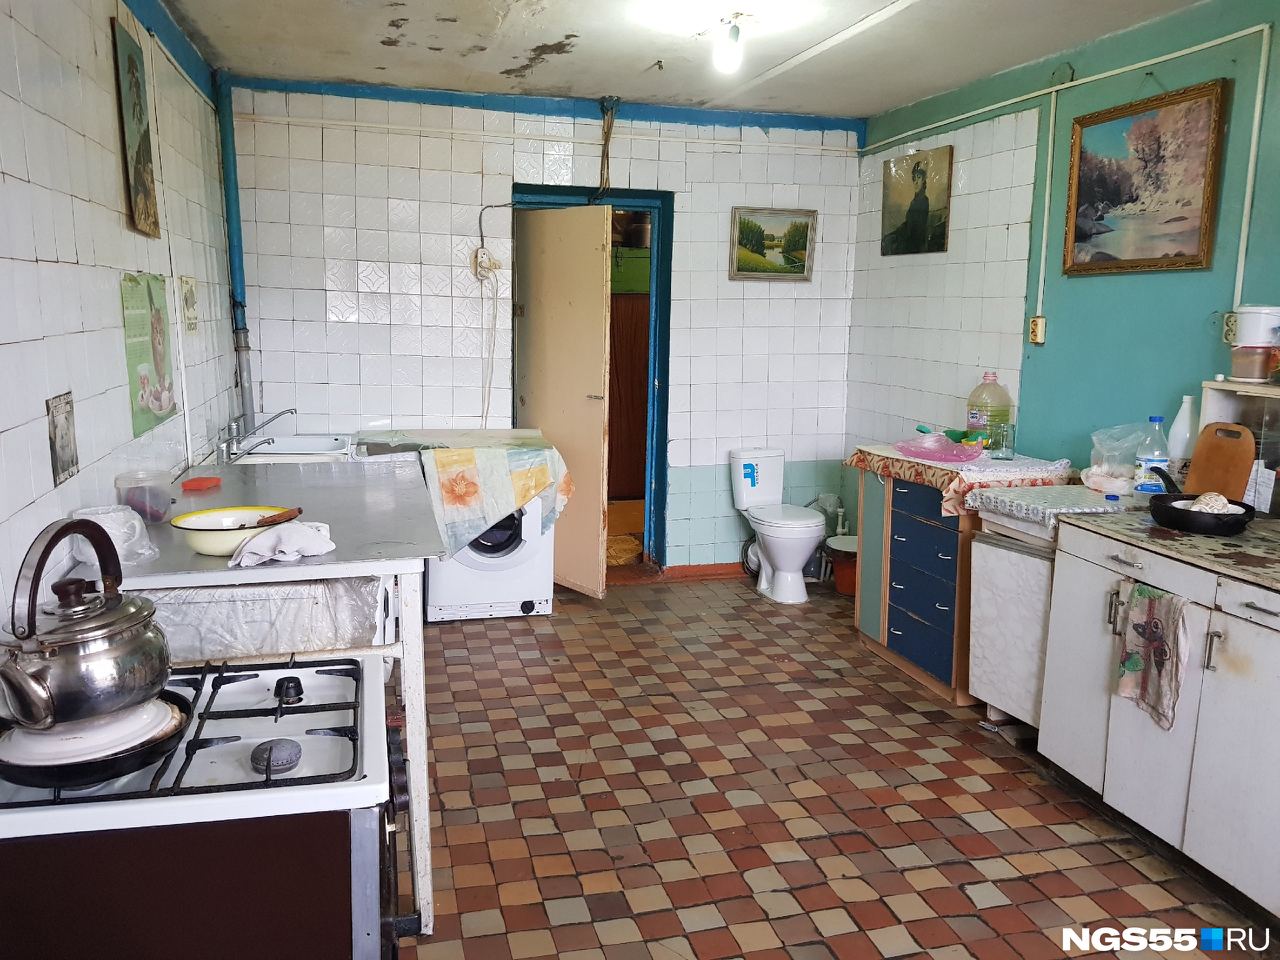 Курьез: В России поставили унитазы на кухне в общежитии. ФОТО